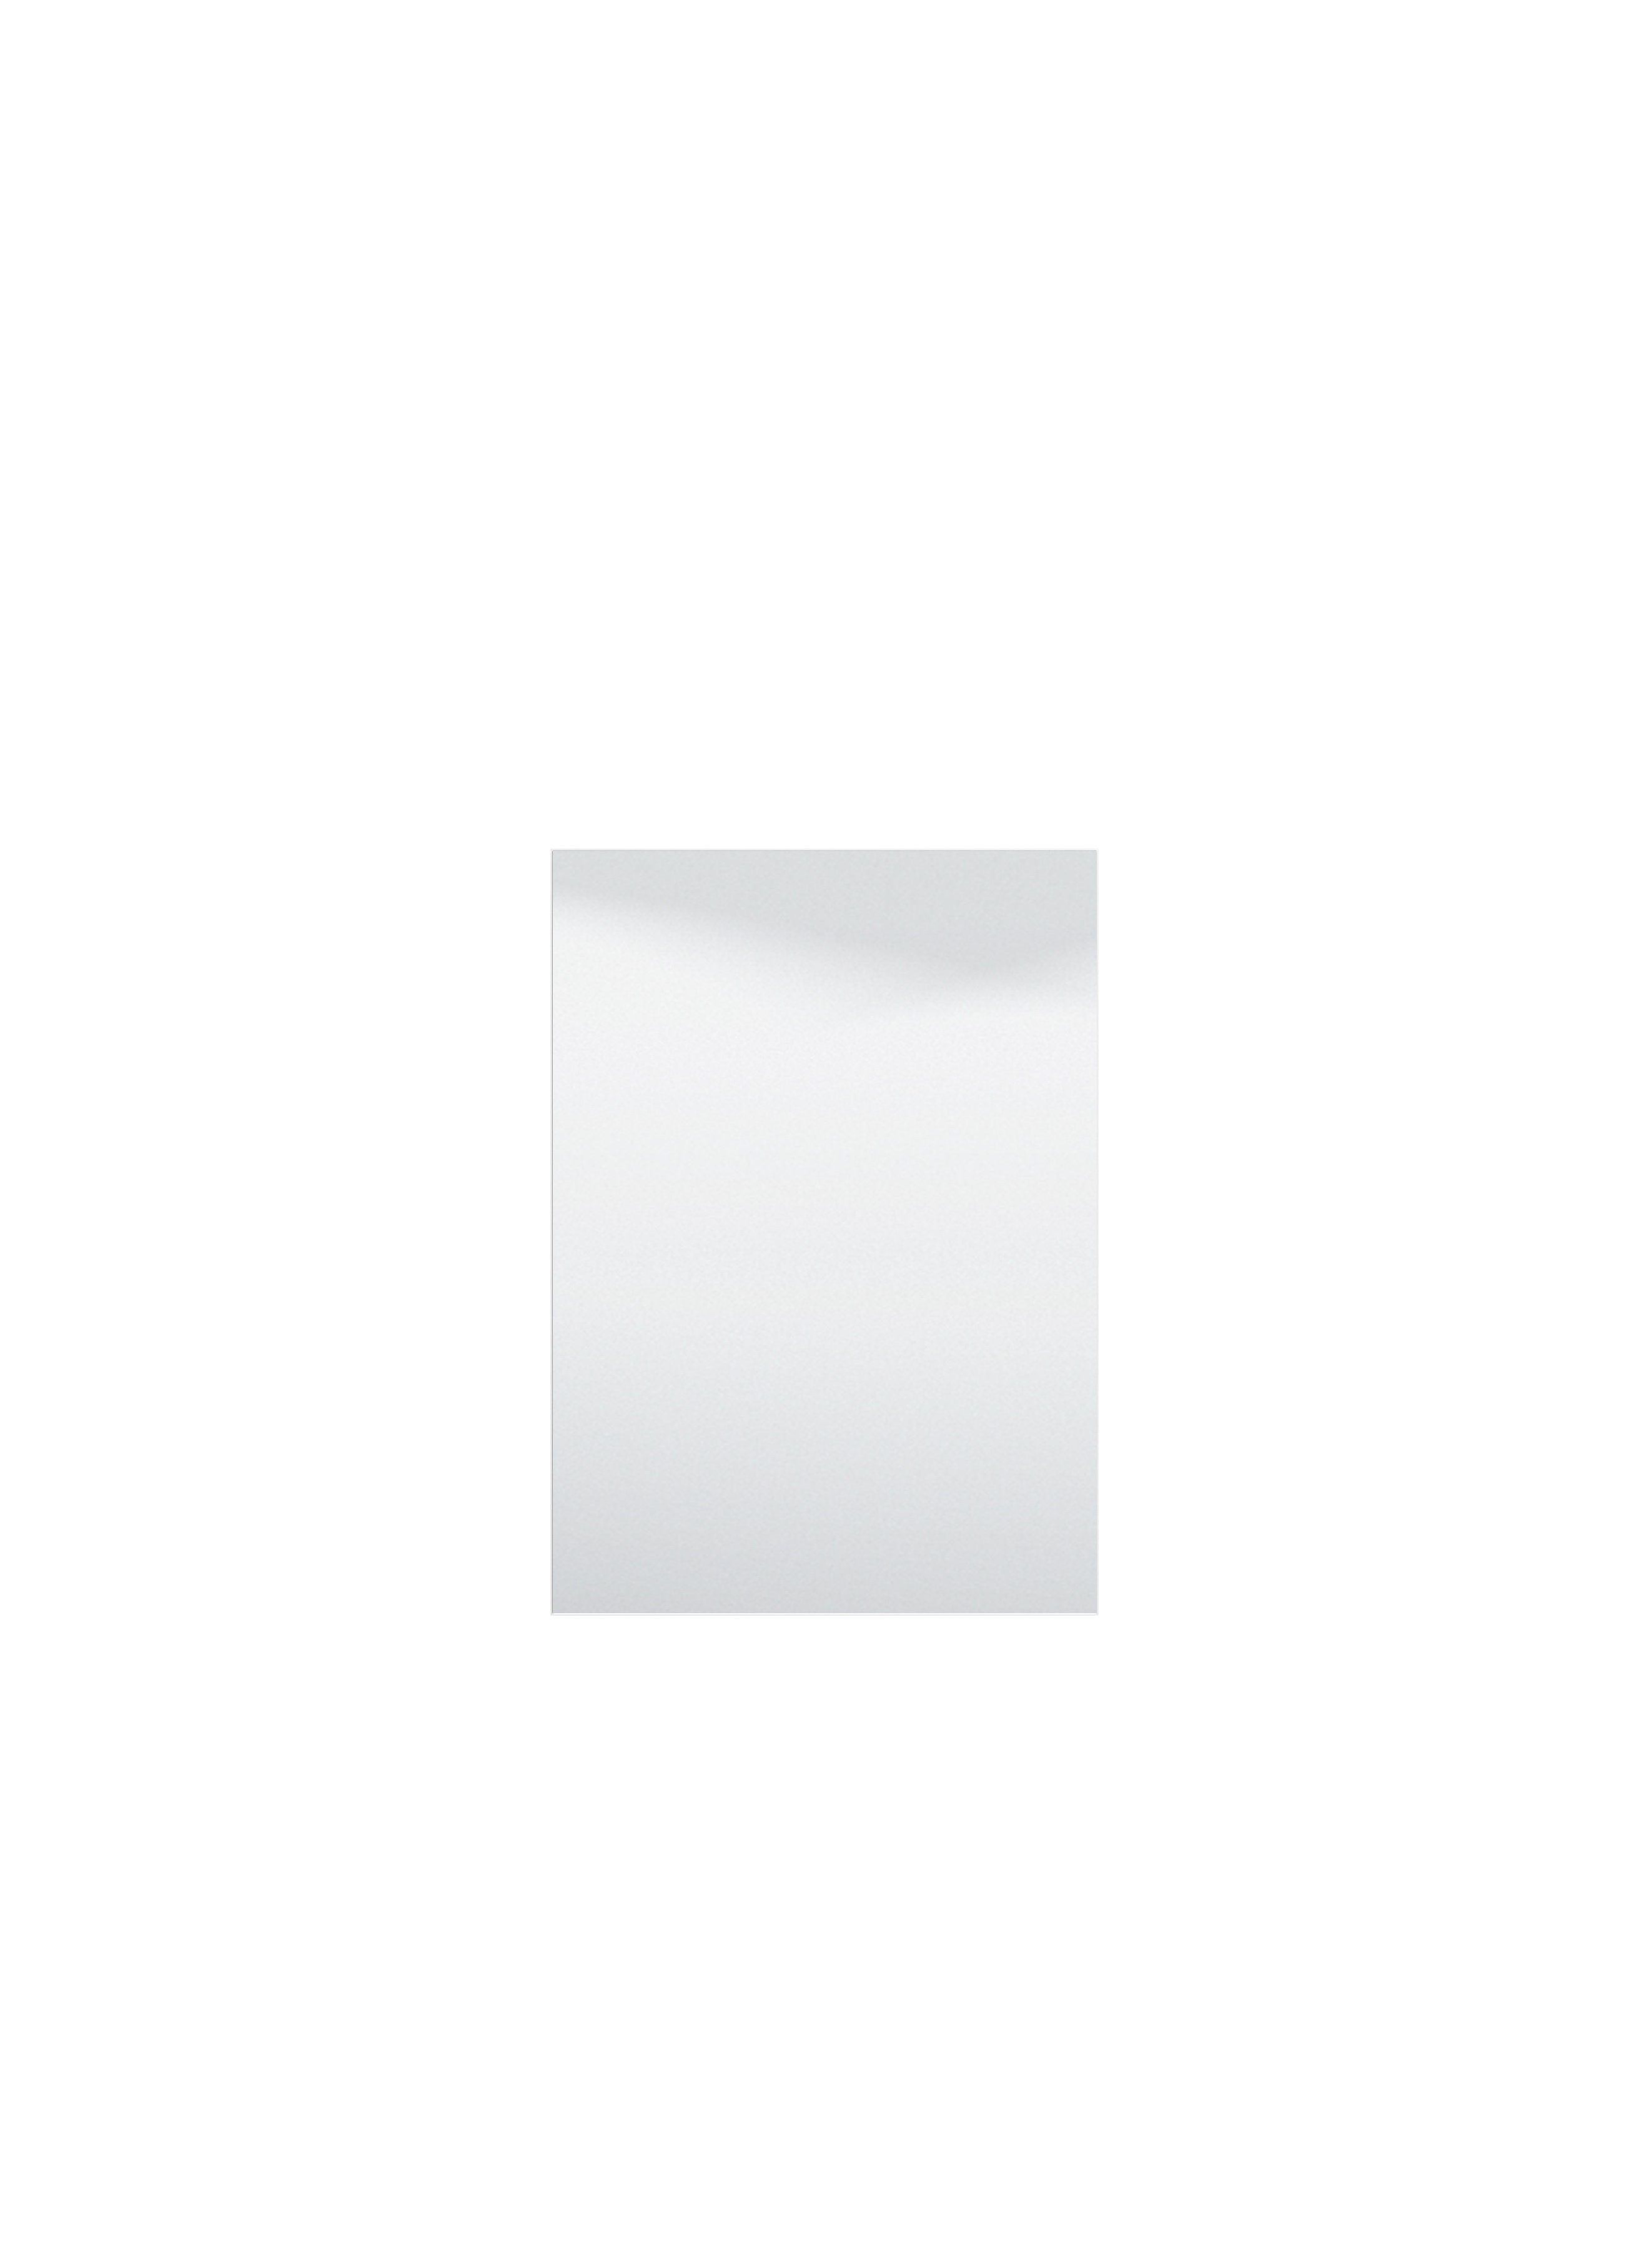 möbelando Wandspiegel Cacak, Moderner Spiegel, Trägerplatte aus melaminbeschichteter Spanplatte in Weiß. Breite 57,5 cm, Höhe 80 cm, Tiefe 2 cm